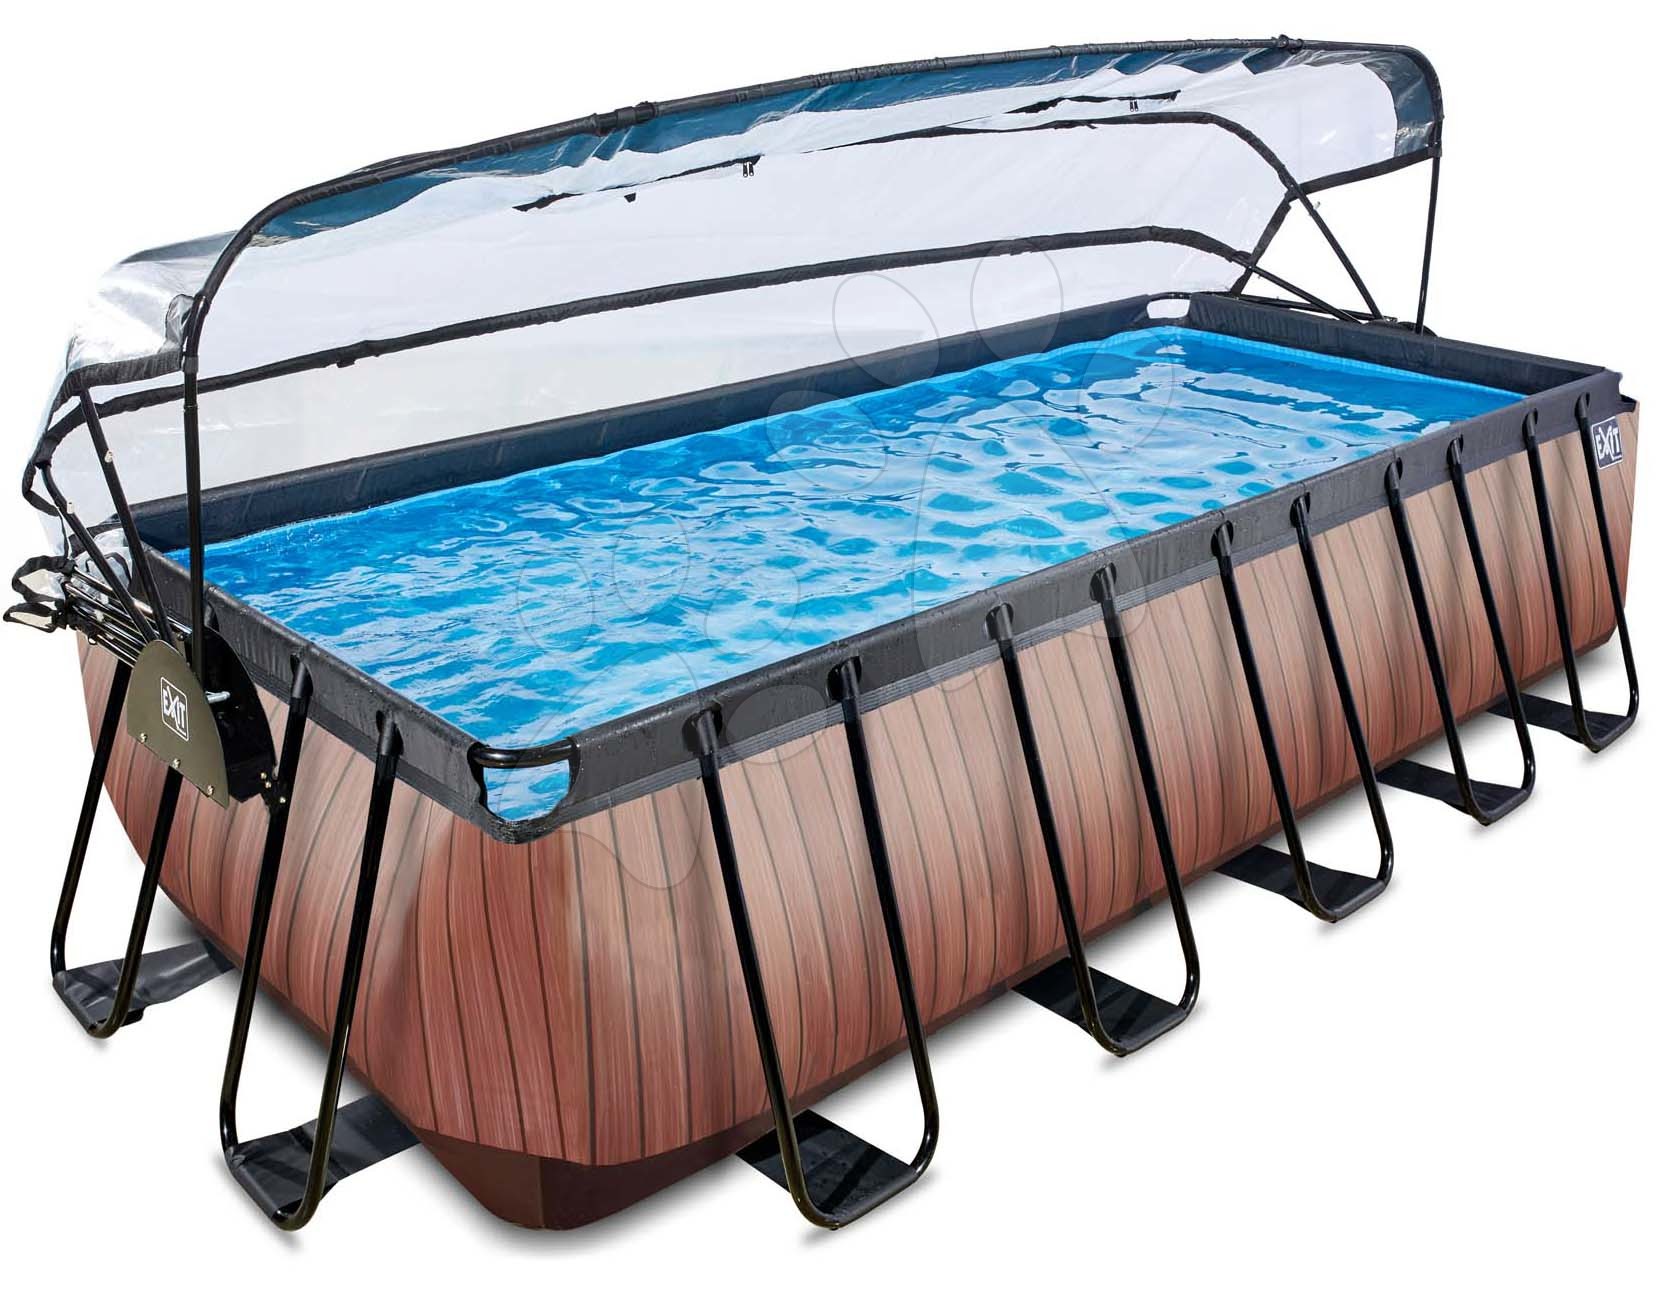 Bazén s krytom pieskovou filtráciou a tepelným čerpadlom Wood pool Exit Toys oceľová konštrukcia 540*250*122 cm hnedý od 6 rokov